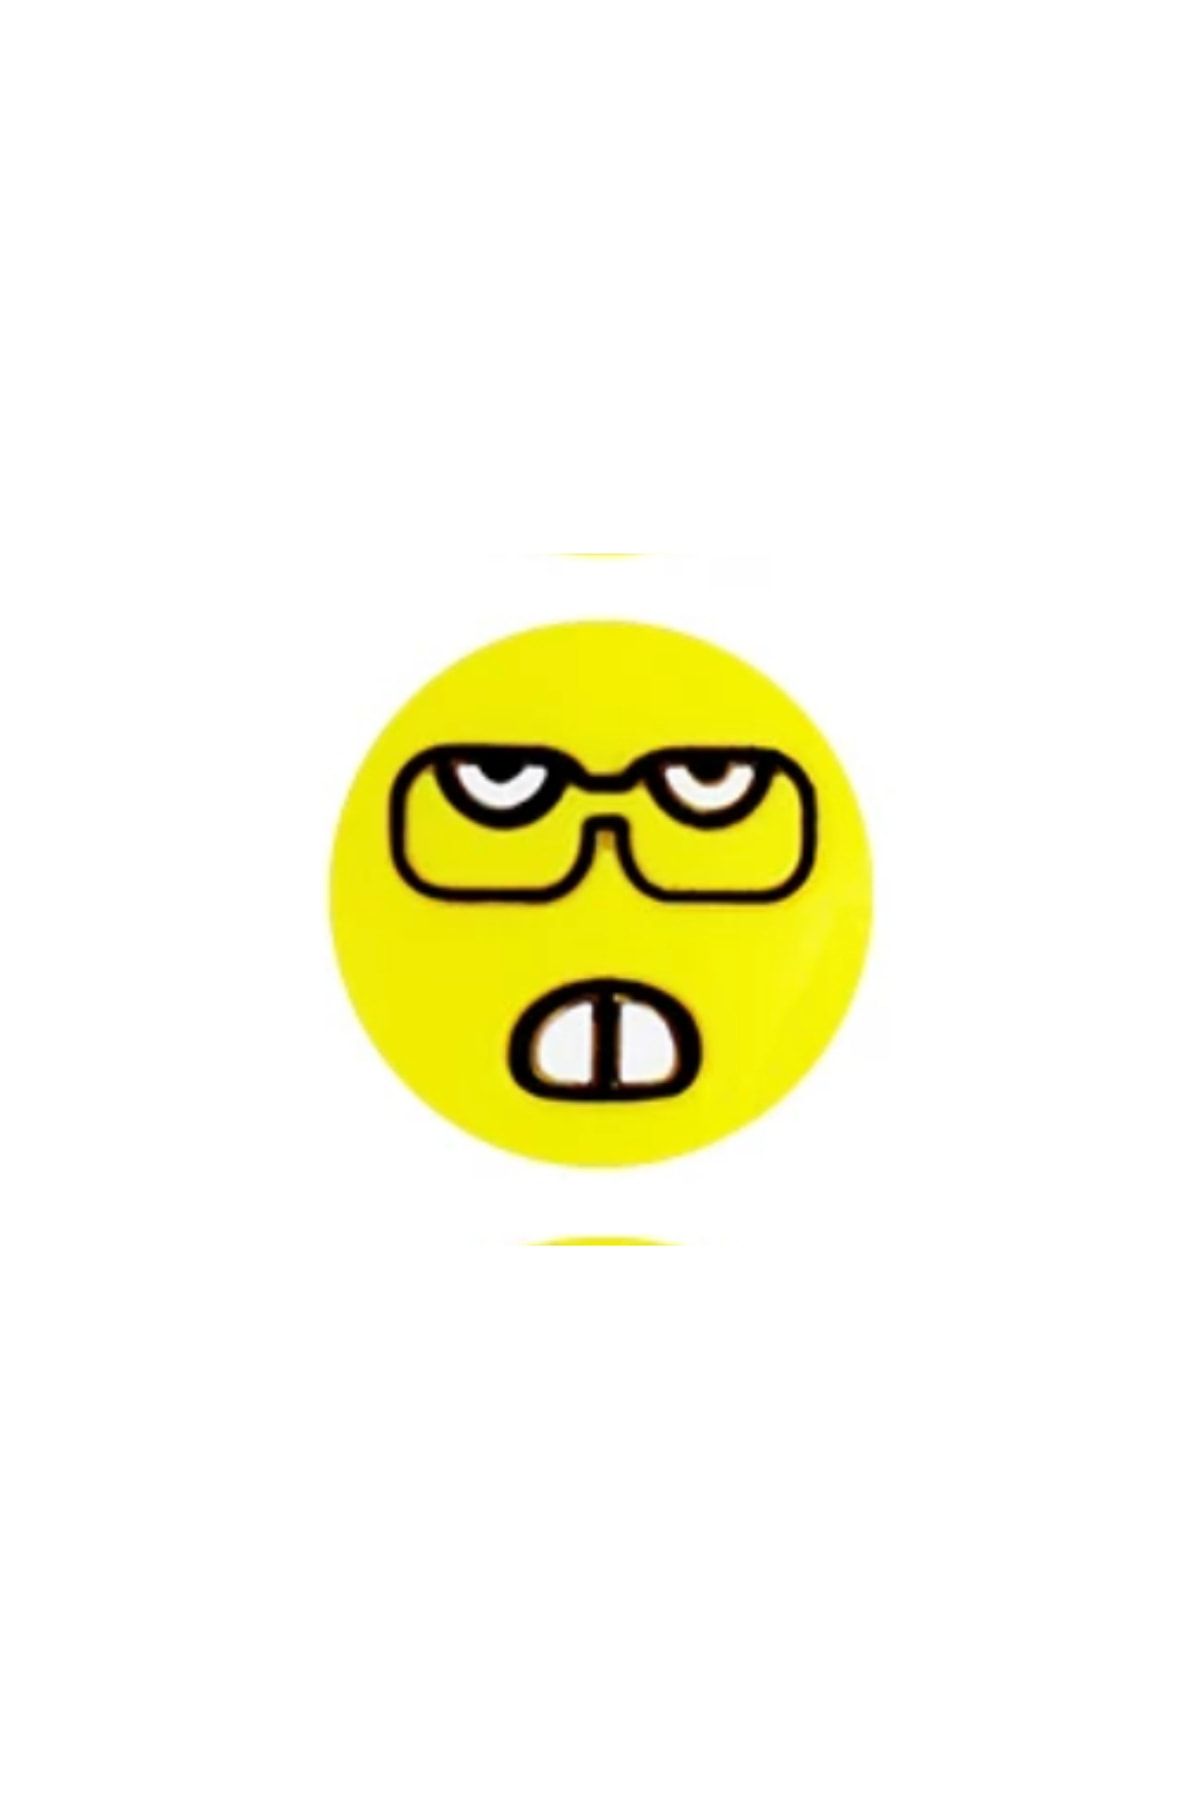 fitmart Tenis Raketi Titreşim Önleyici - Emoji